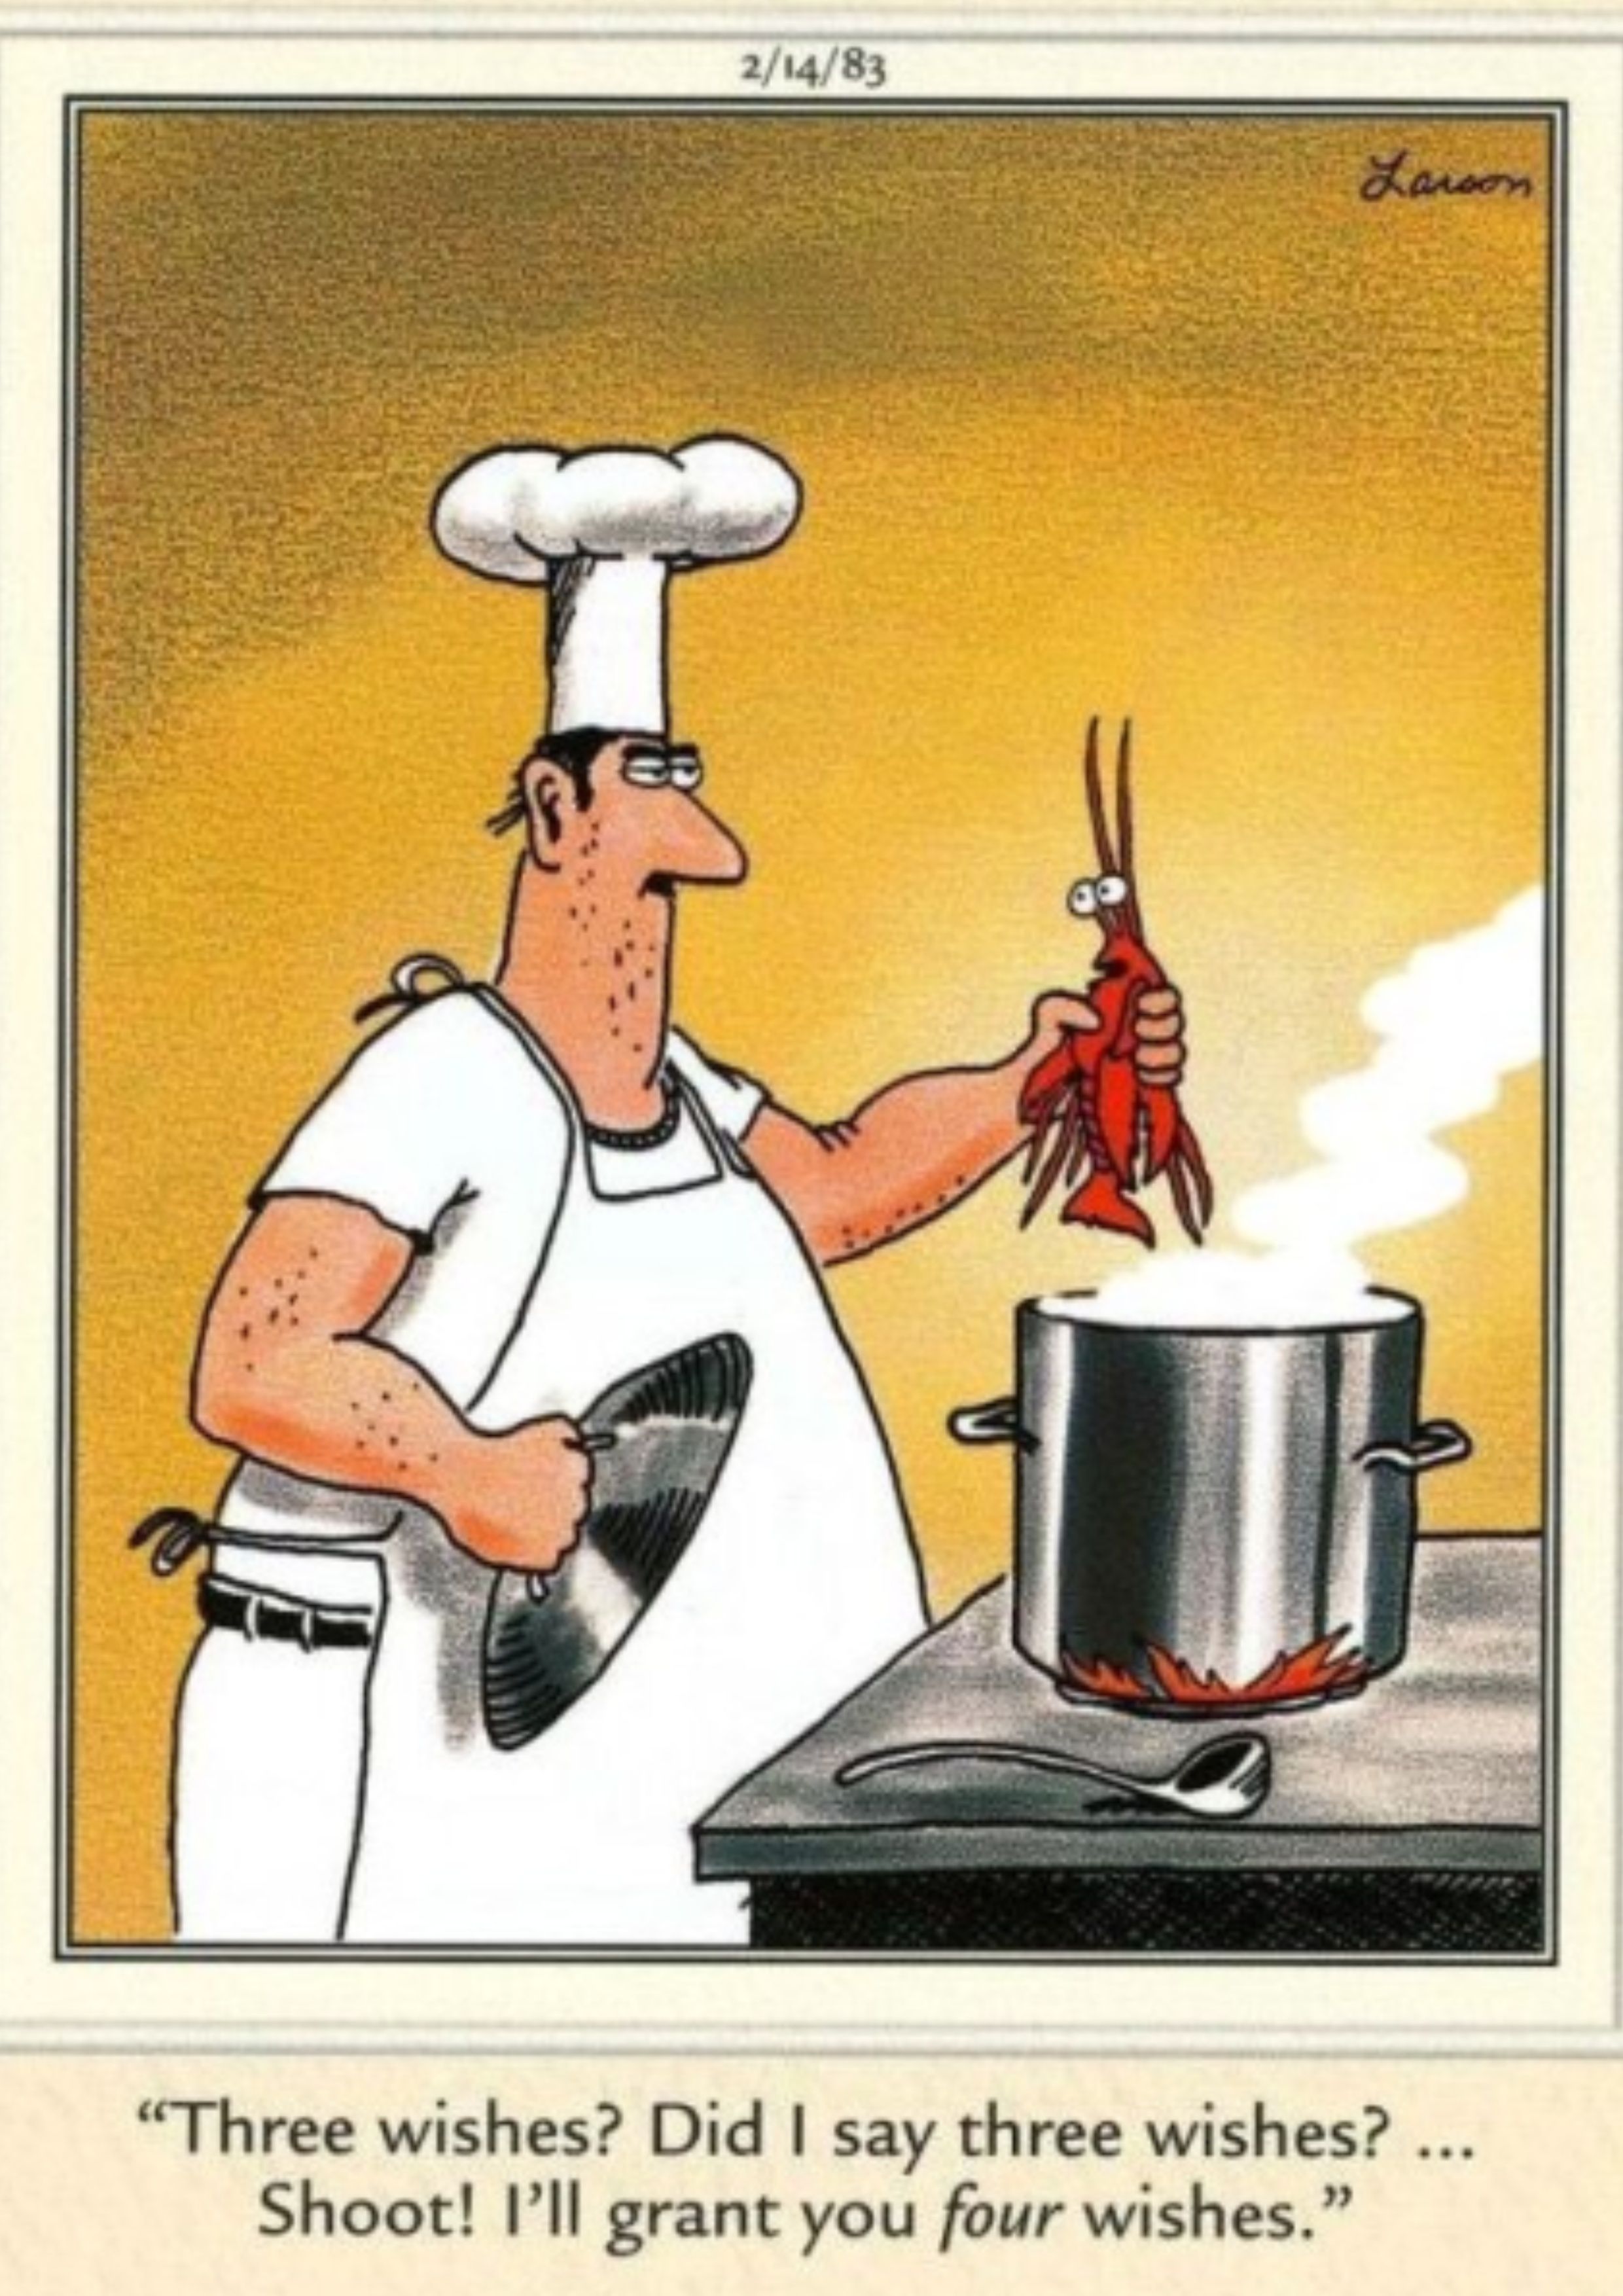 Chef sosteniendo langosta sobre una olla en el otro lado.